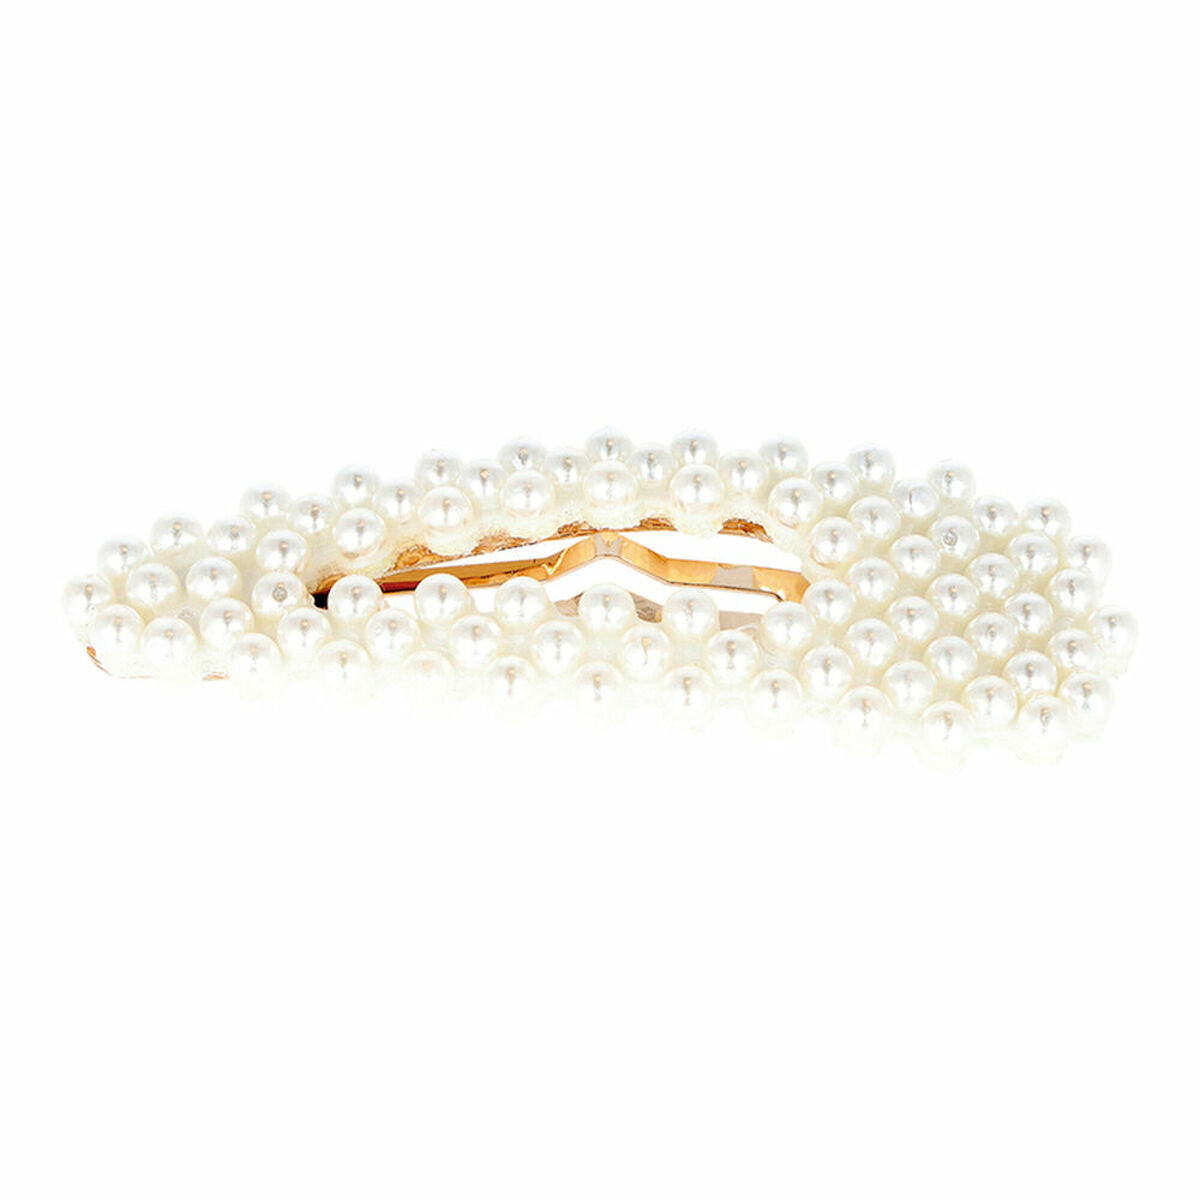 Hair fastener Eurostil DORADAS CON Beads Golden (2 uds)